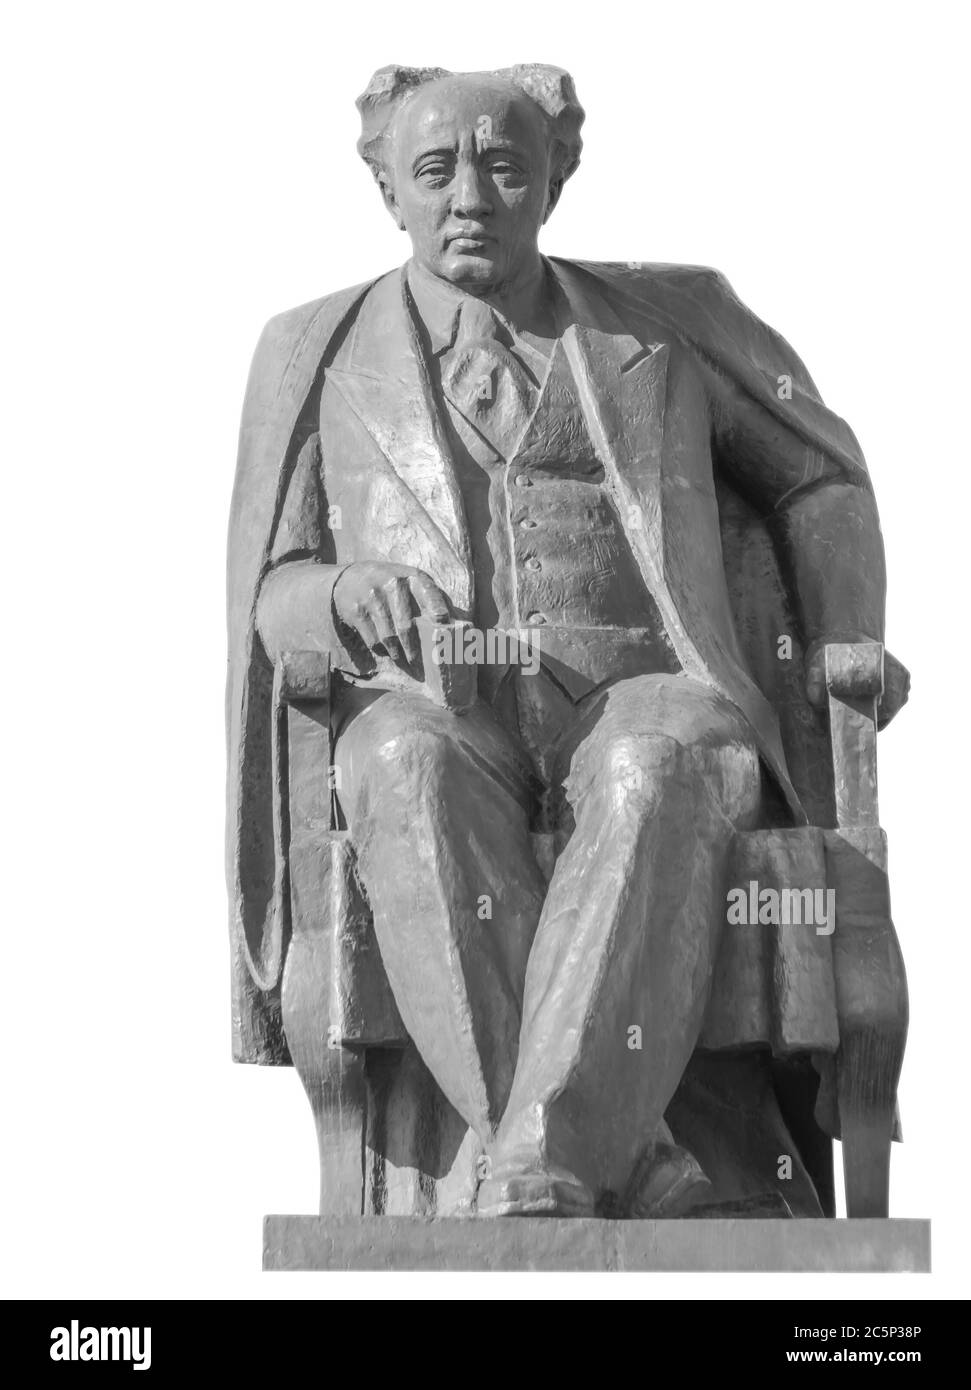 ALMATY, KASACHSTAN - 21. MÄRZ 2016: Das Denkmal von Muchtar Auezov - sowjetischer kasakischer Schriftsteller, Dramatiker und Wissenschaftler. Der Autor ist Bildhauer Sergebaye Stockfoto